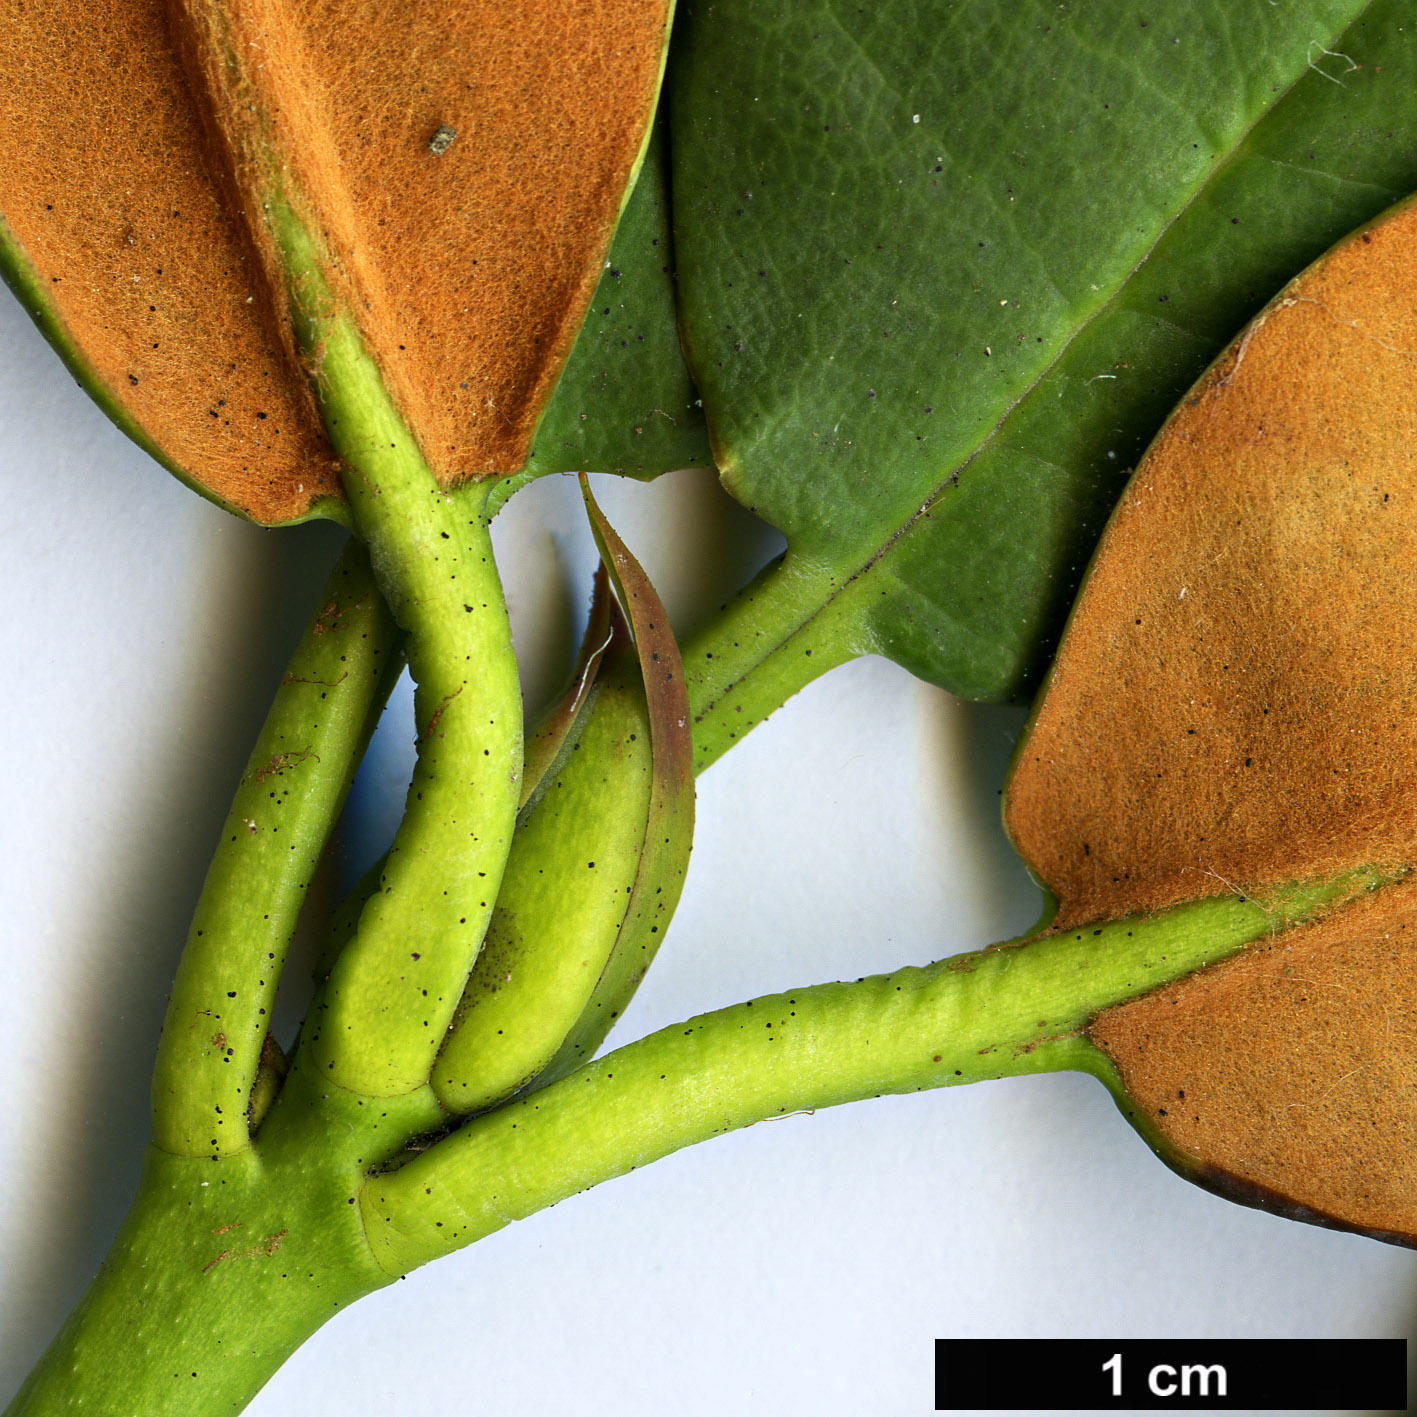 High resolution image: Family: Ericaceae - Genus: Rhododendron - Taxon: campanulatum - SpeciesSub: subsp. aeruginosum